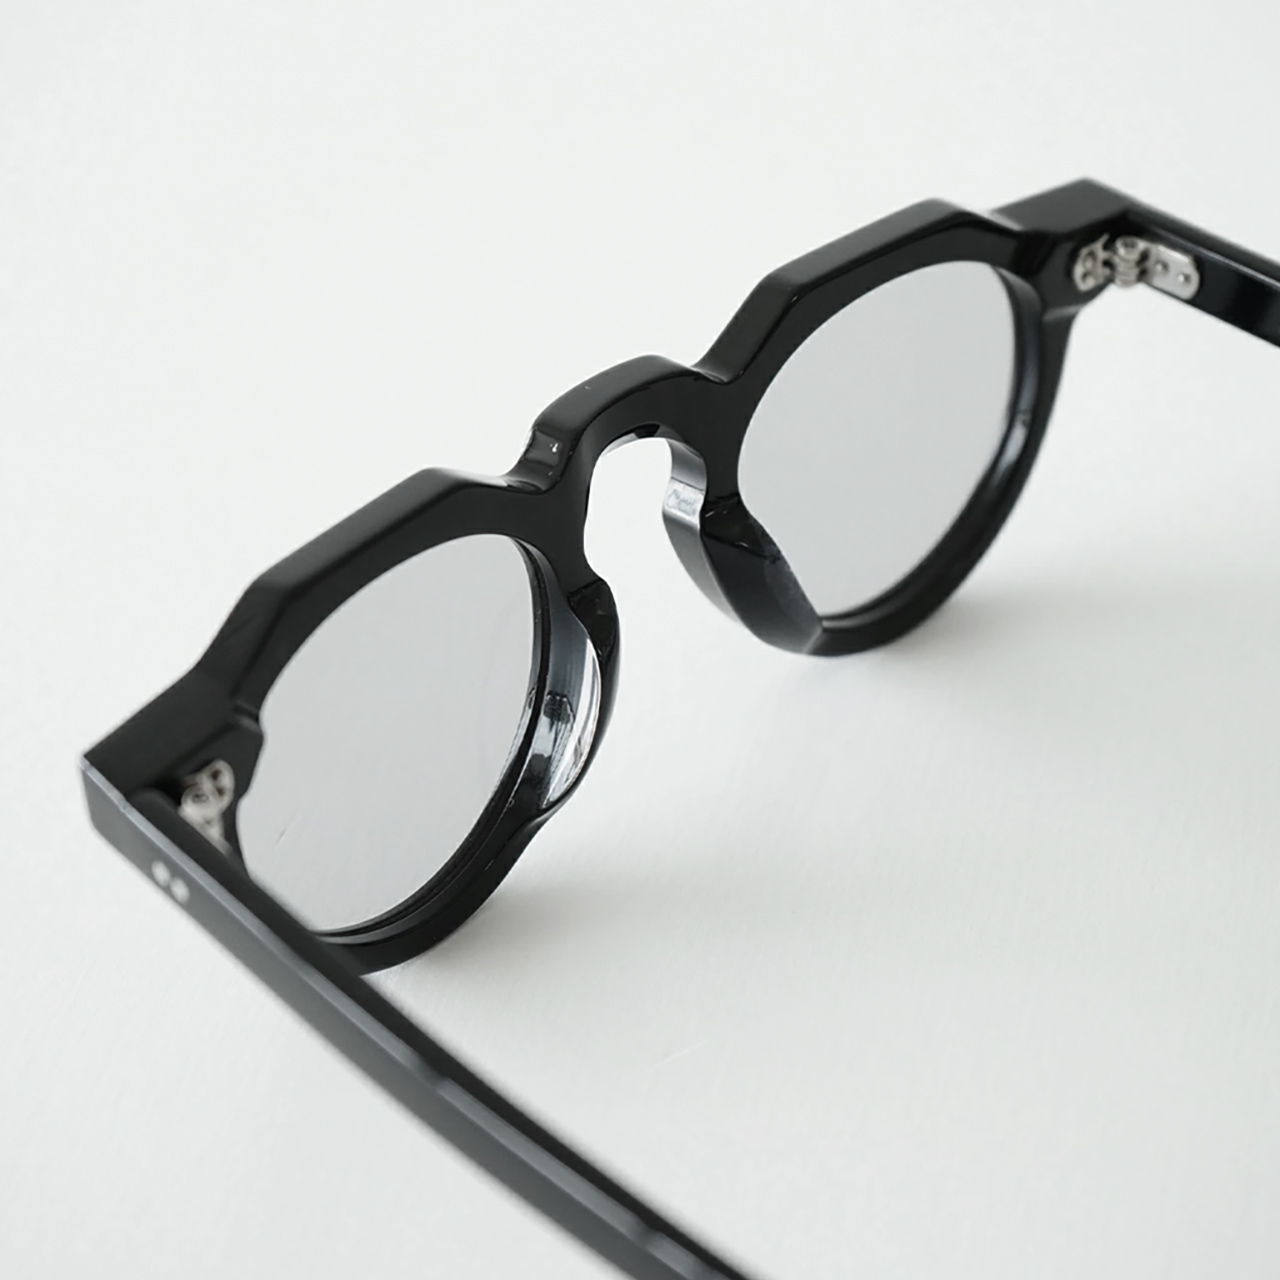 楽天市場】フューバイニュー Few by NEW. F5 サングラス 眼鏡 めがね 